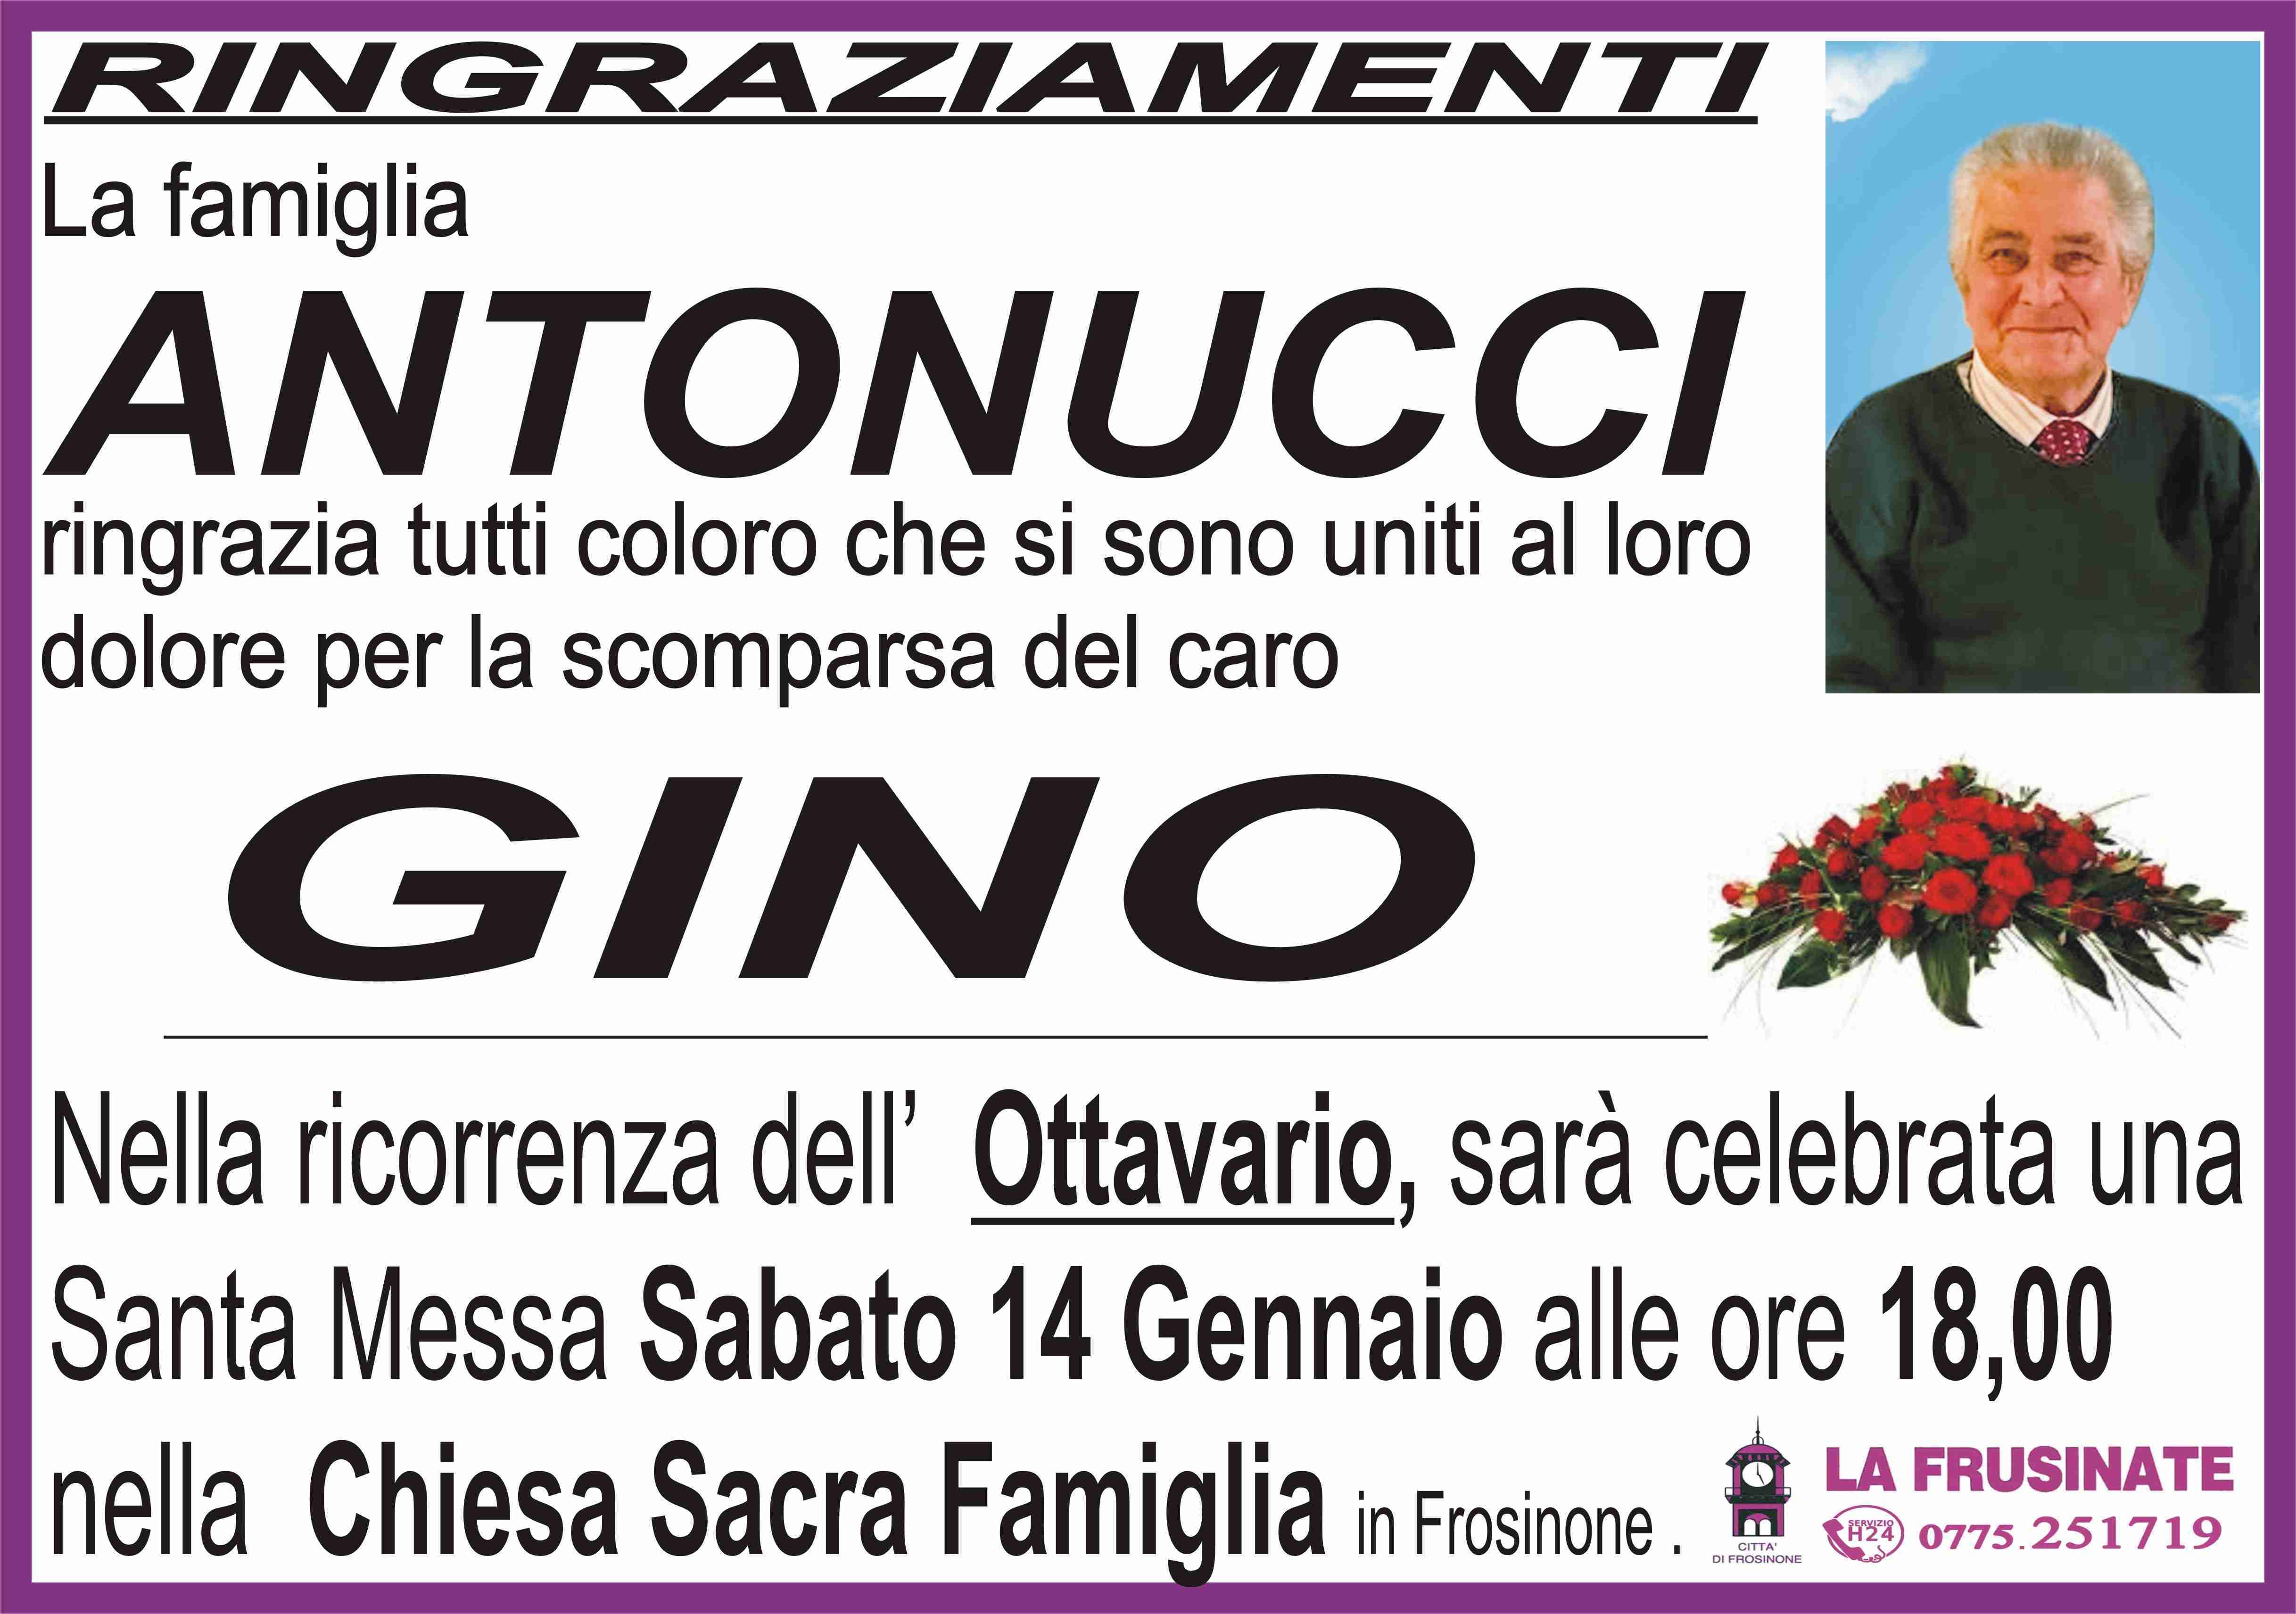 Gino Antonucci